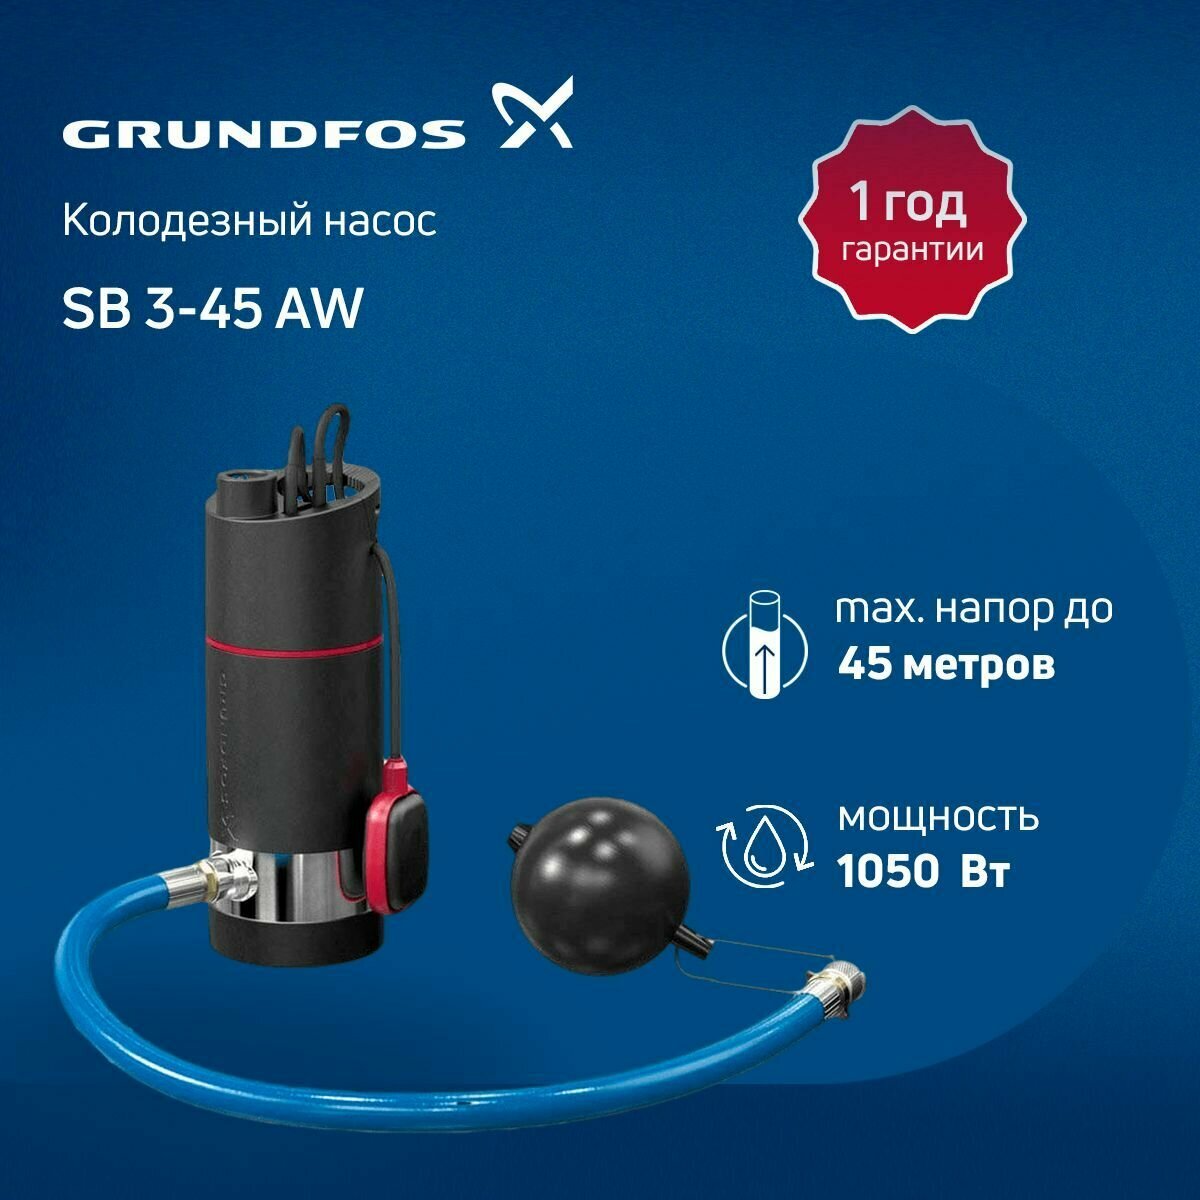 Колодезный насос Grundfos SB 3-45 AW 230V 50Hz 15m Schuko, GAS IT (поплавковый выключатель, всасывающий шланг, фильтр)